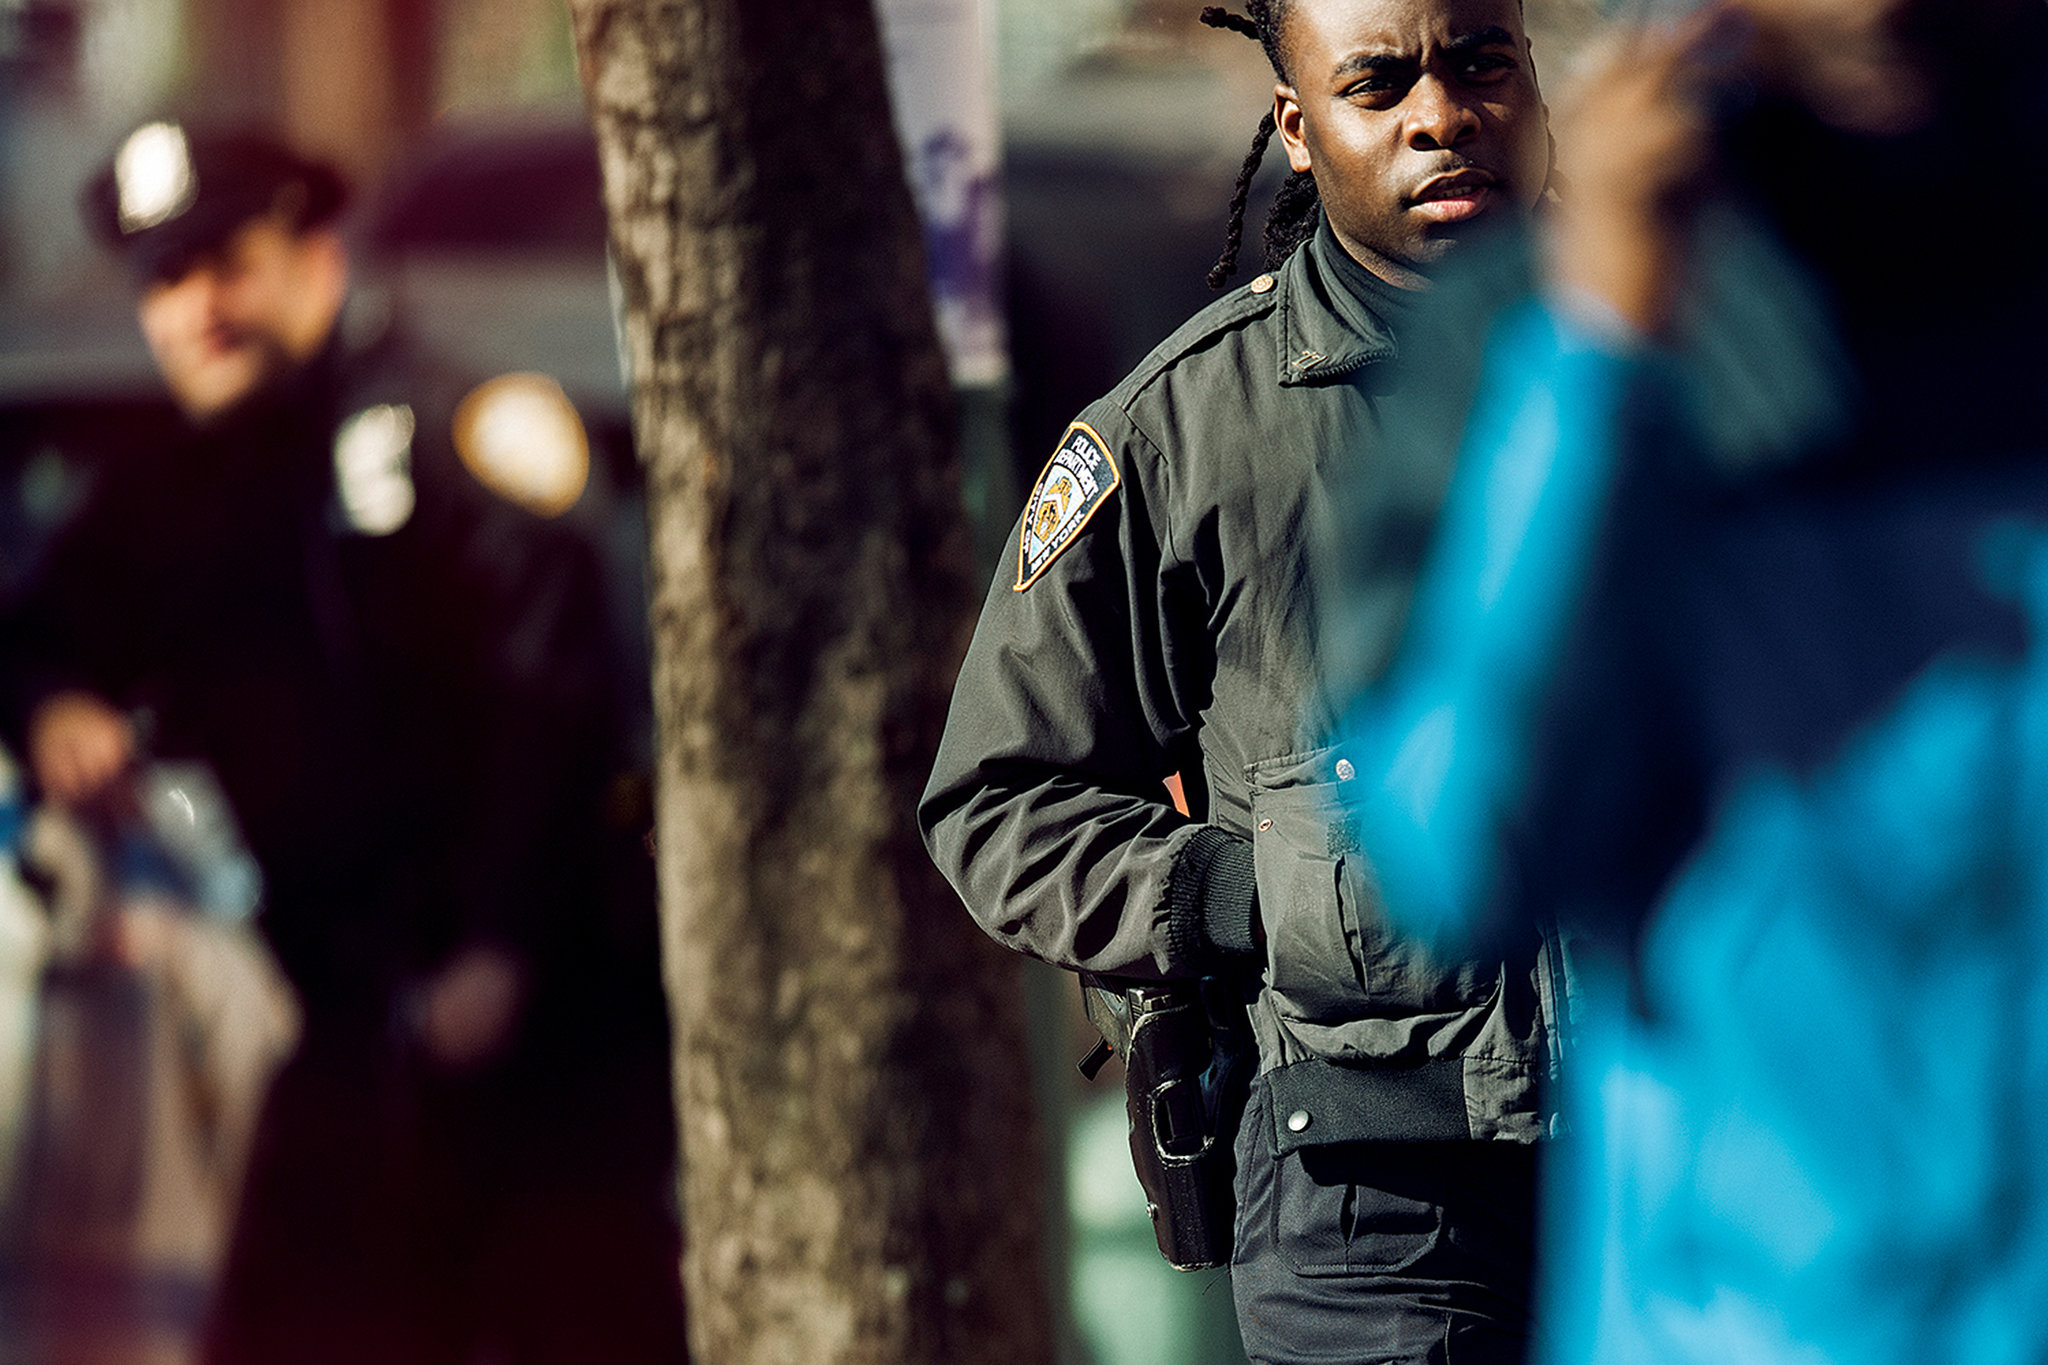 NYPD – Geschichte und Gegenwart des gewaltigen New Yorker Polizeiapparats